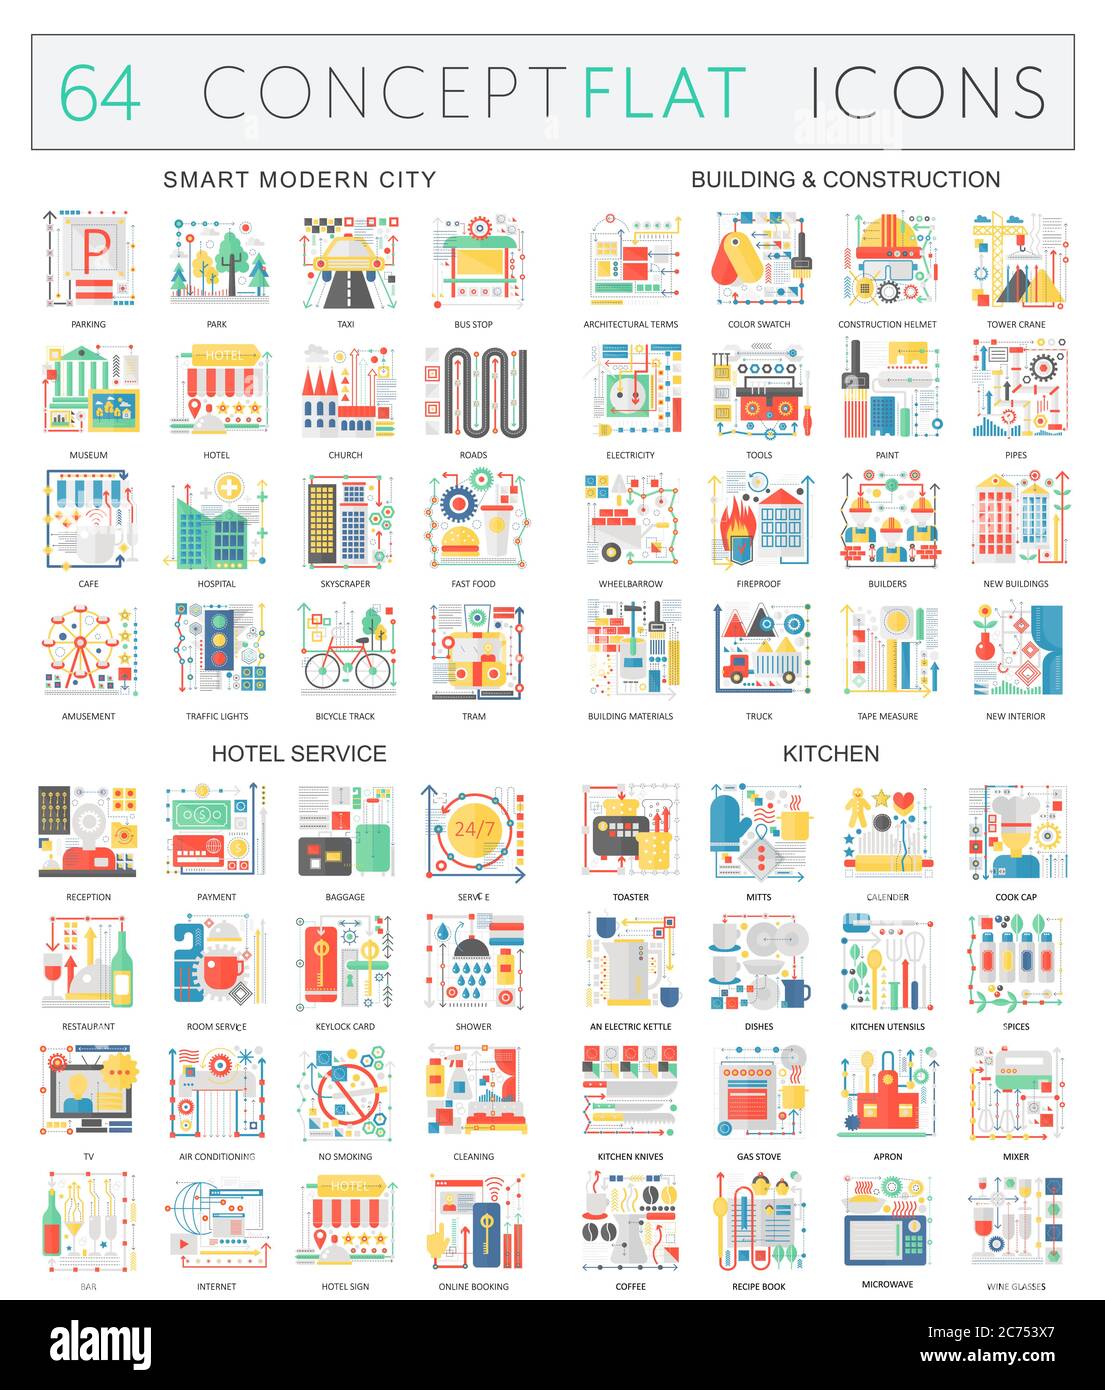 Infografiken Konzept Ikonen der Smart City, Bau, Hostel-Service, Küche. Premium-Qualität Vektor-flaches Design für Web-Grafiken isoliert. Stock Vektor